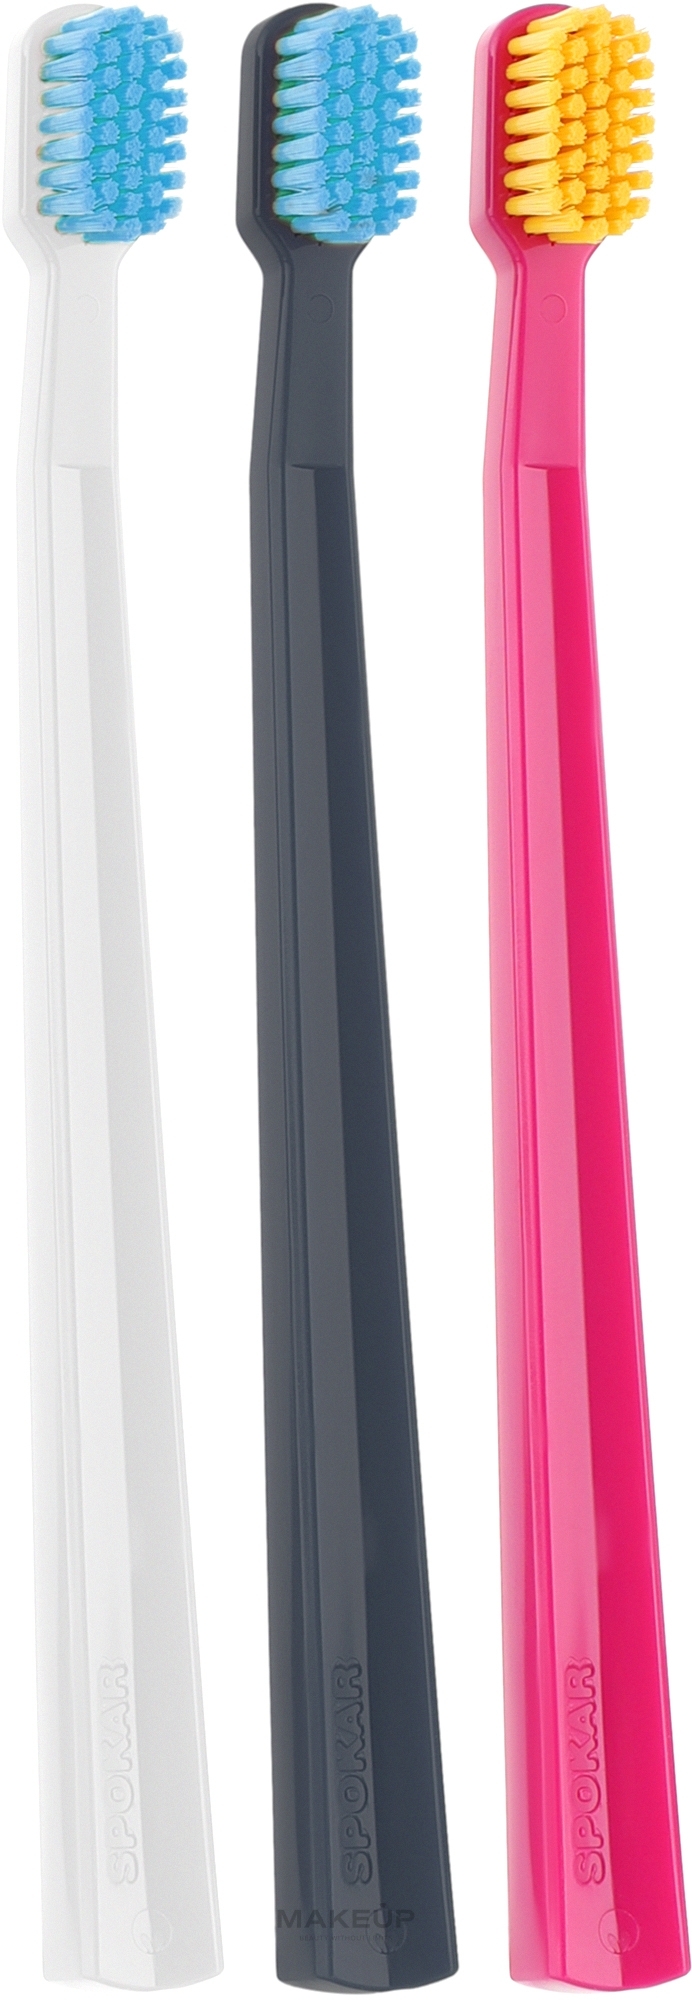 Набір зубних щіток "Х", м'які, чорна + біла + рожева - Spokar X Soft — фото 3шт